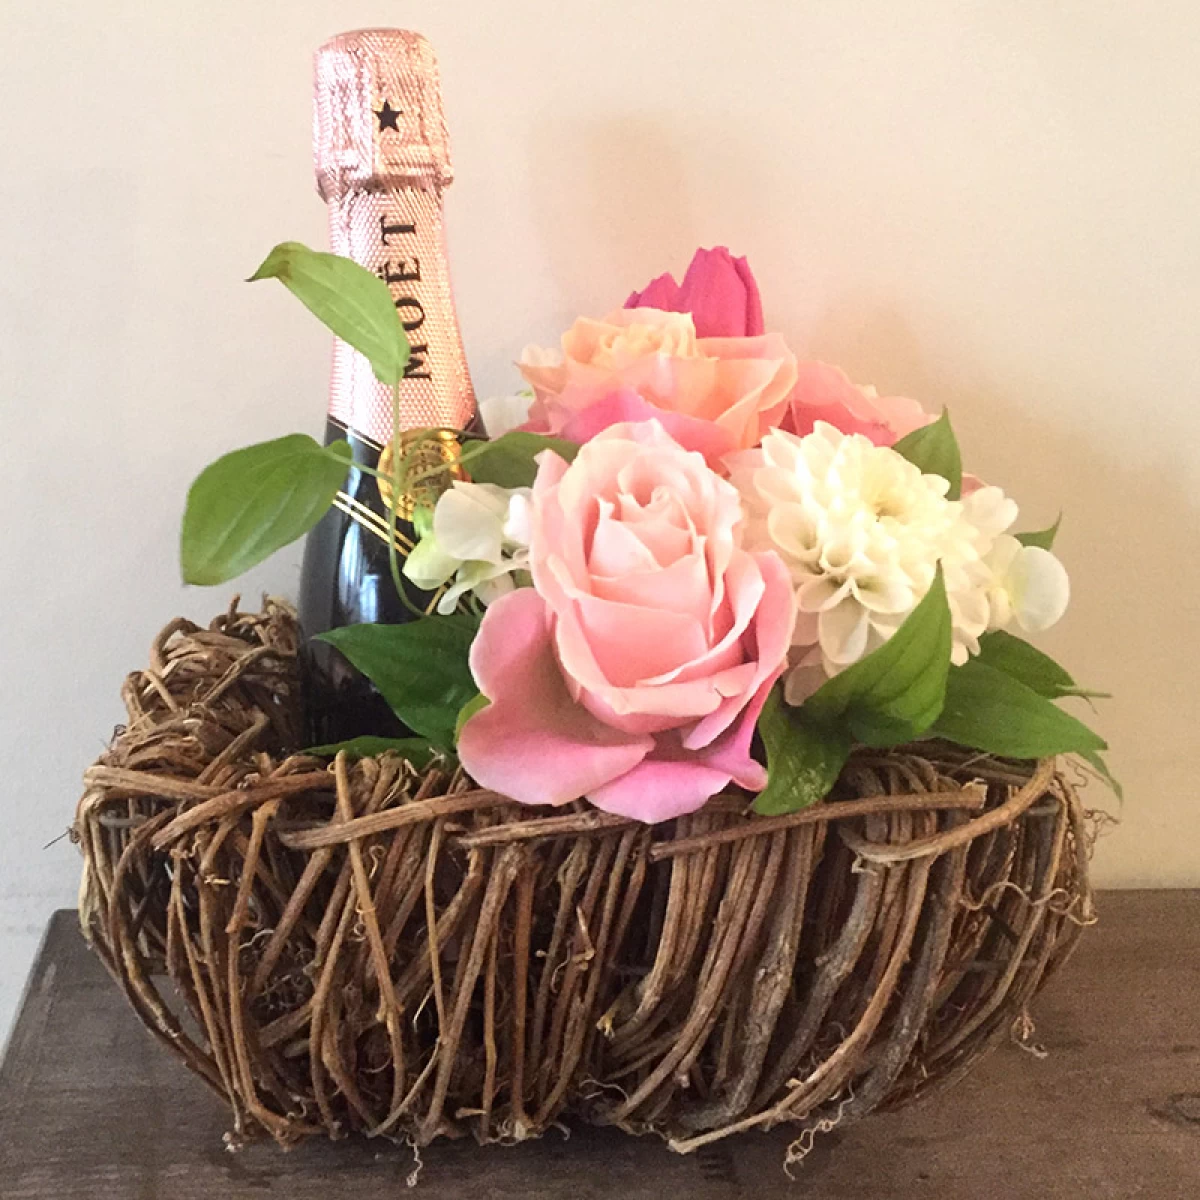 結婚祝い モエ[ワイン 花ギフト]お手軽 シャンパン・モエとお花のアレンジセット